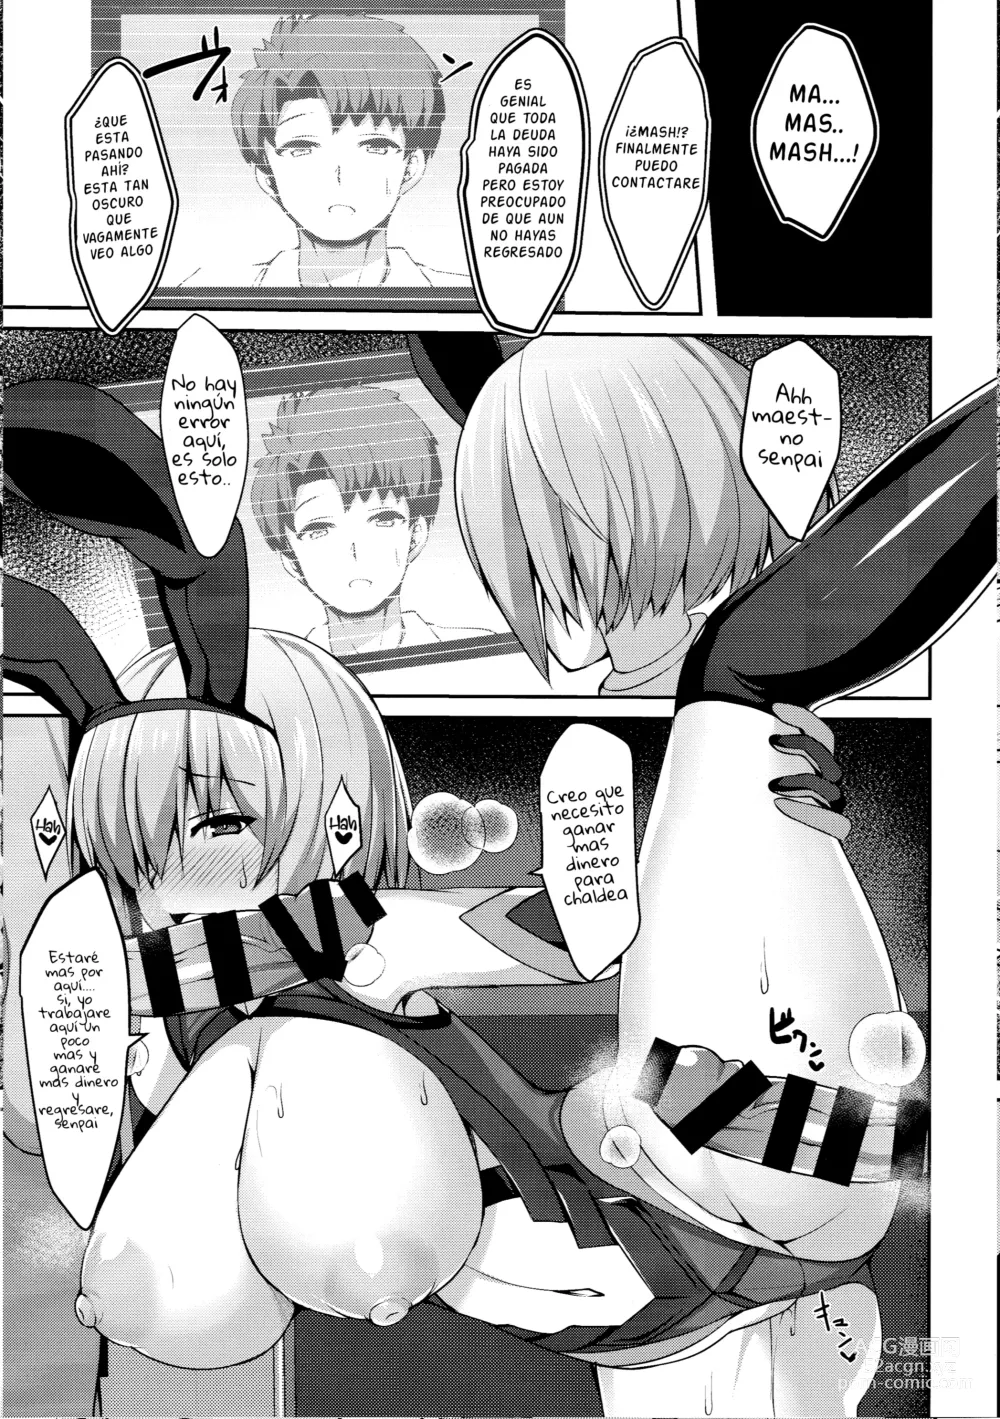 Page 18 of doujinshi Sexo en el casino con mash para pagar su deuda